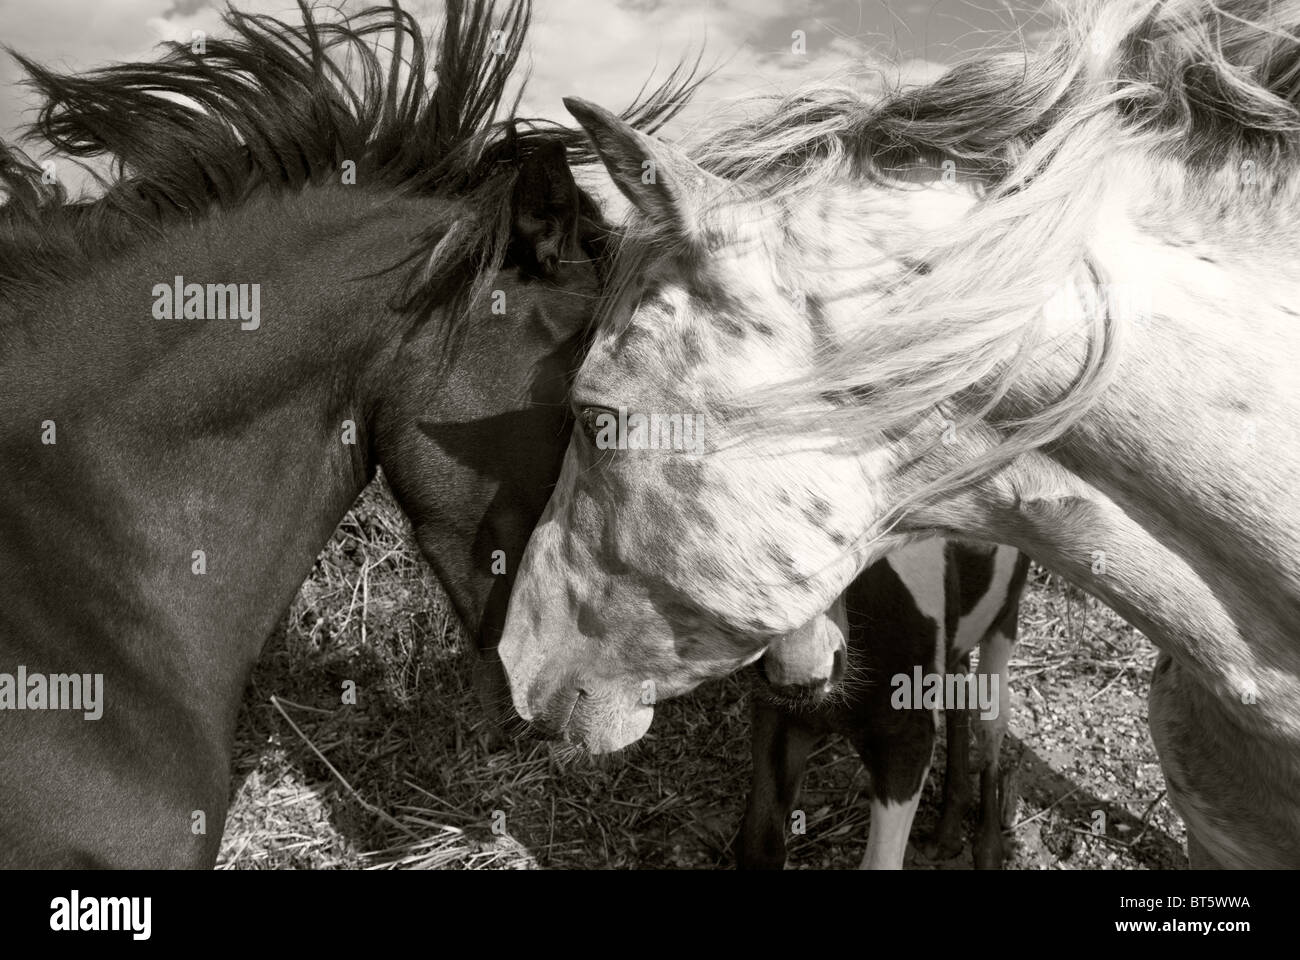 Deux chevaux chaque message d'autres avec leur crinière au vent. Banque D'Images